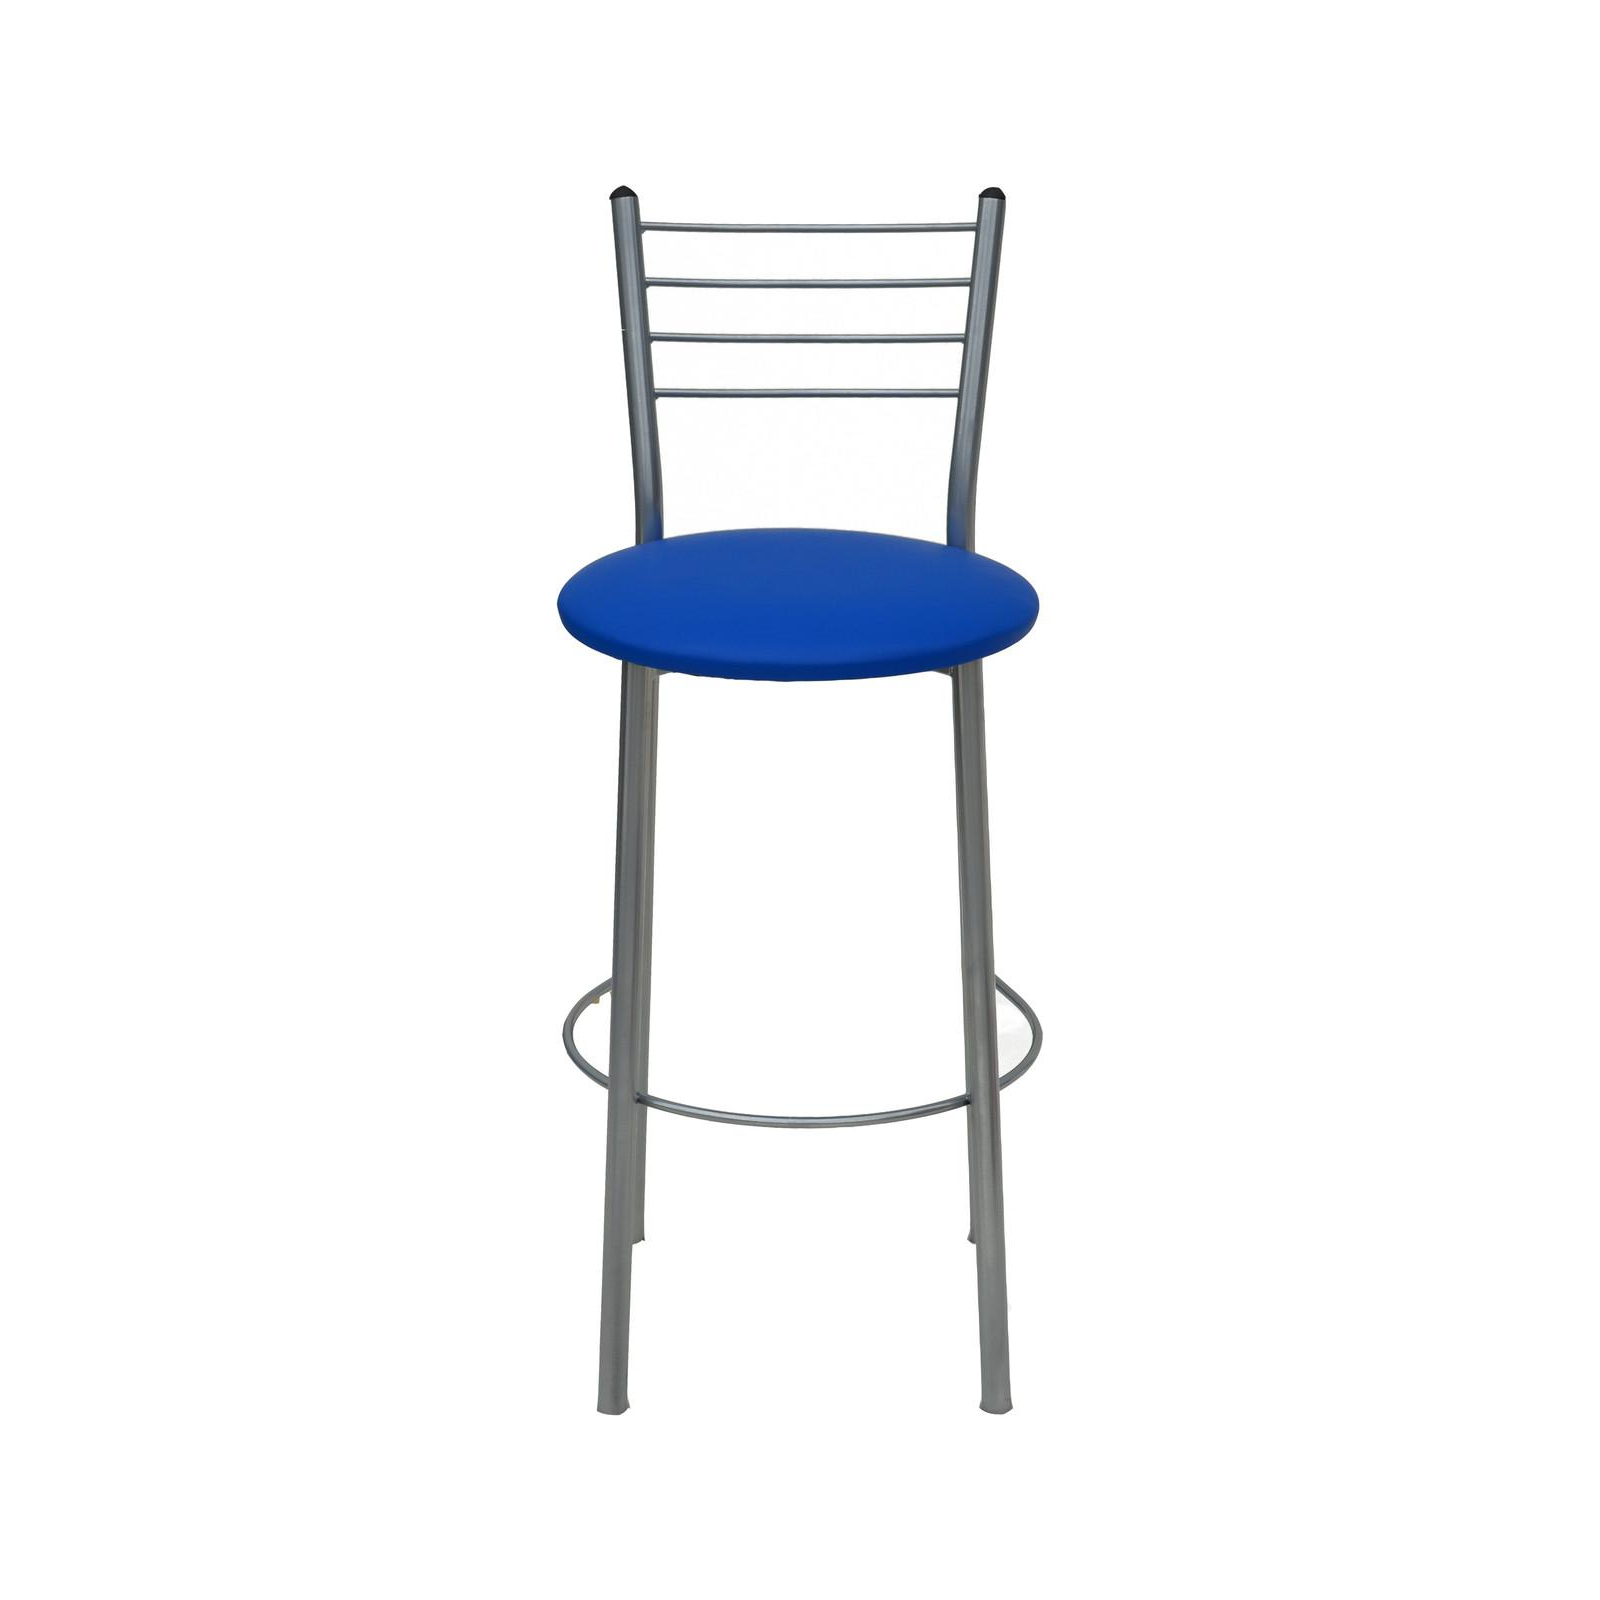 Барный стул Примтекс плюс барный 1022 Hoker alum S-5132 Blue (1022 HOKER alum S-5132)